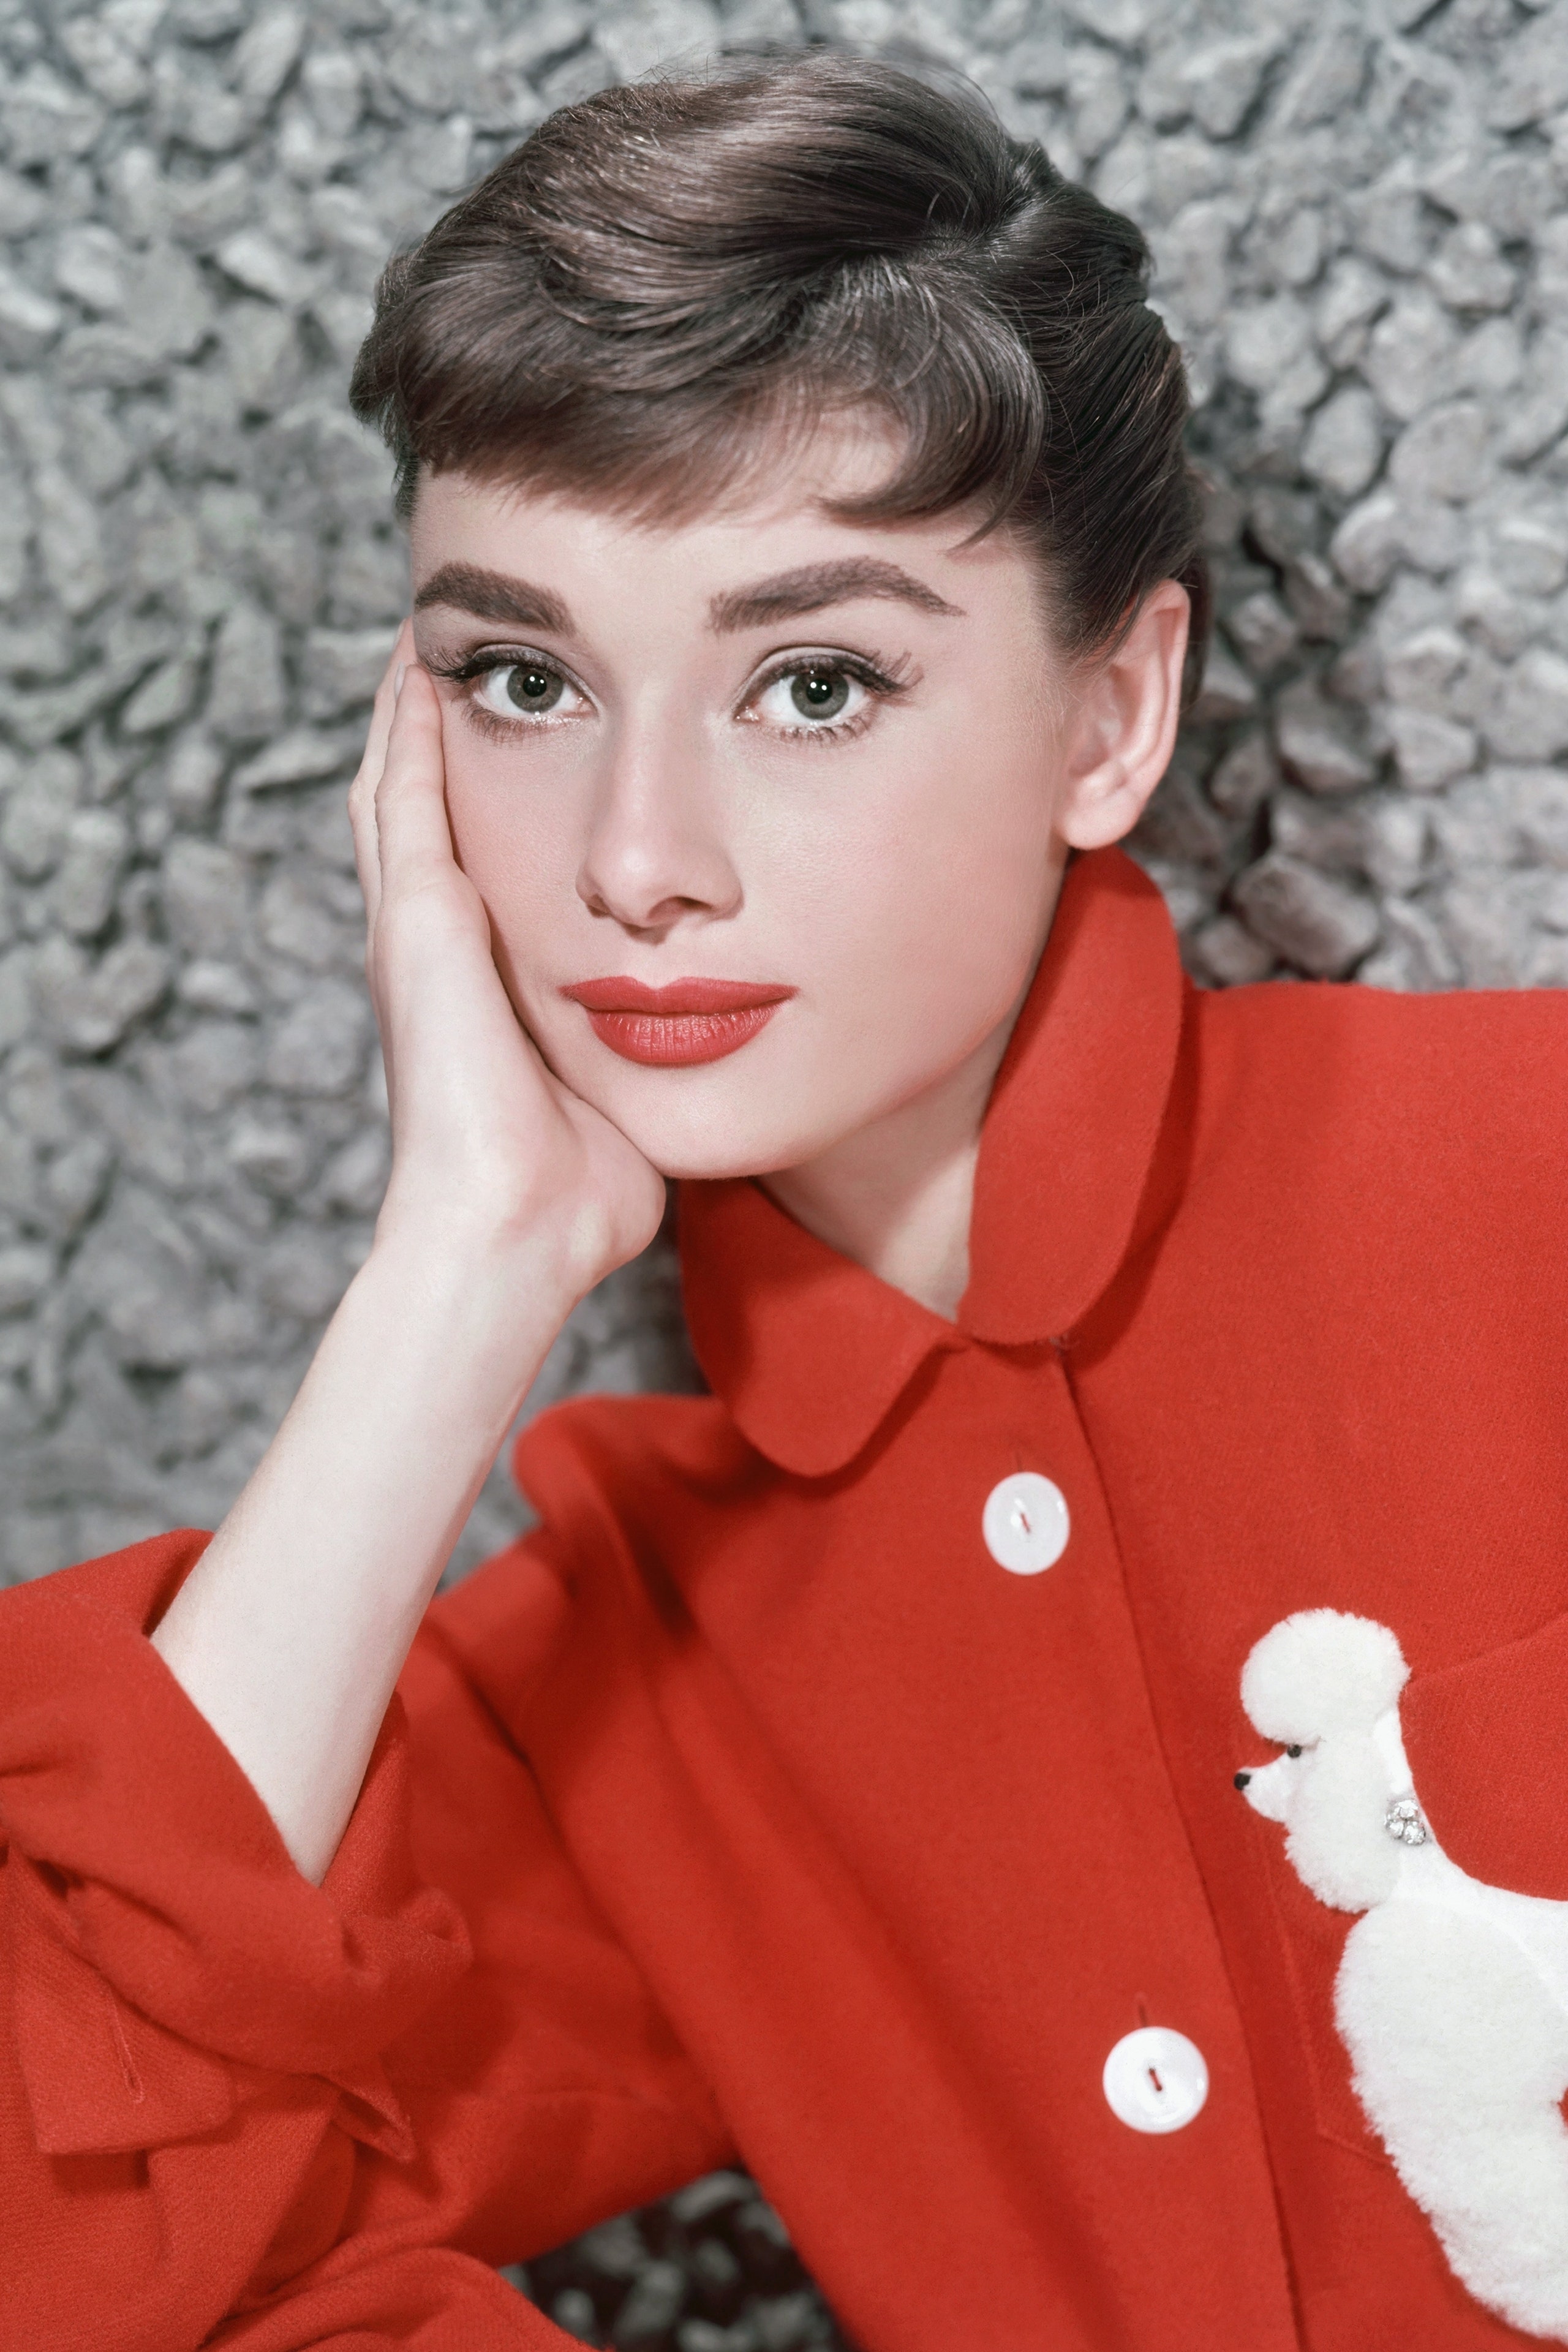 CIRCA 1957  Actress Audrey Hepburn poses for a publicity still circa 1957.